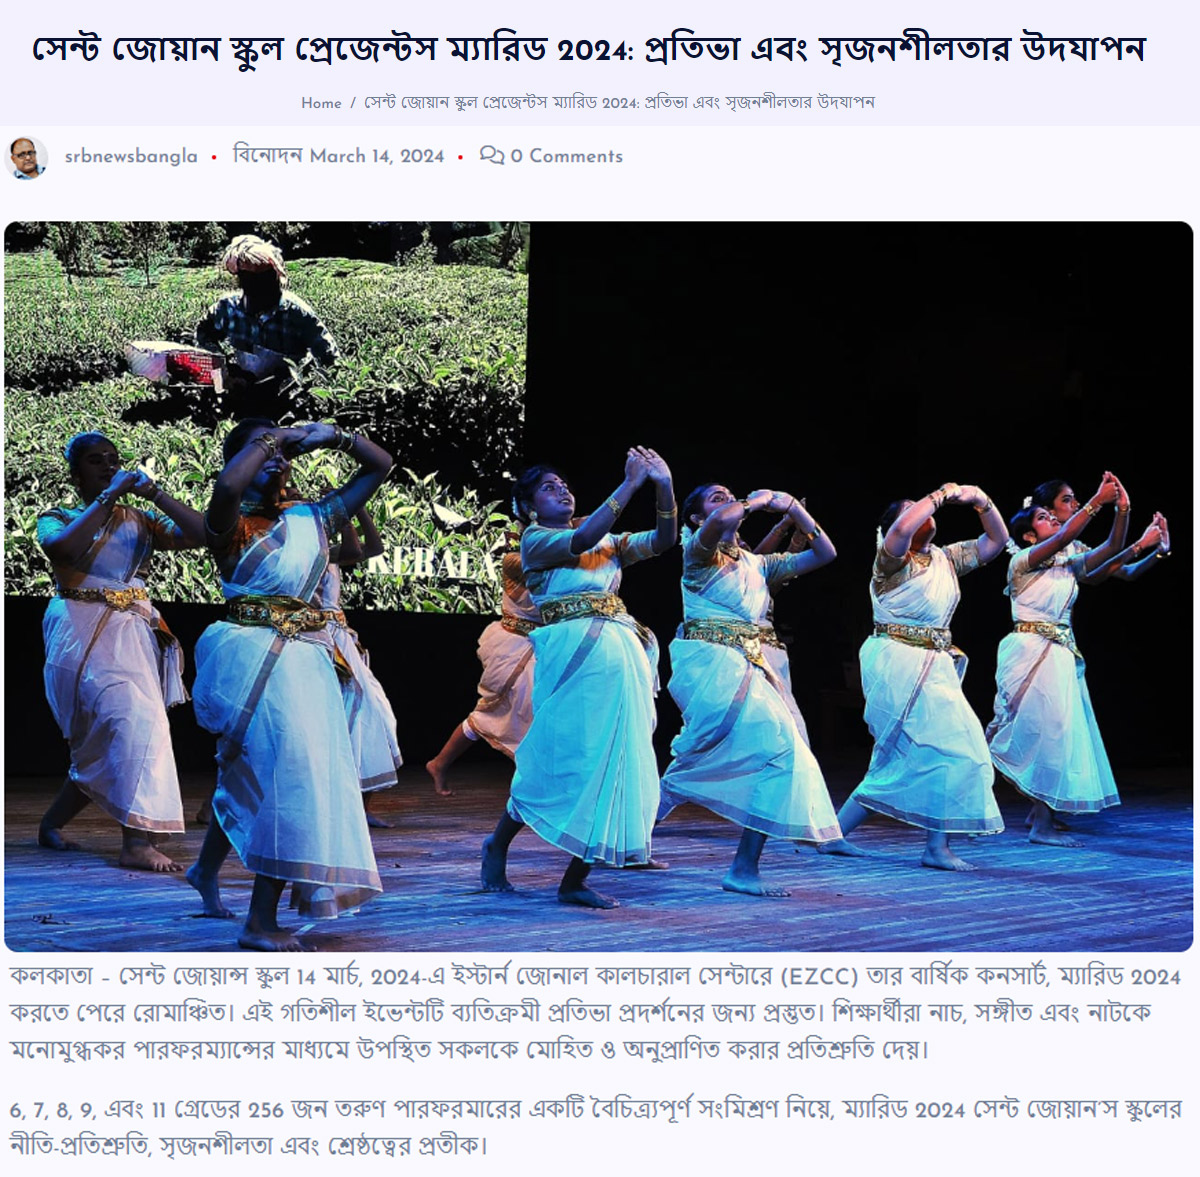 SRB-News-Bangla-140324